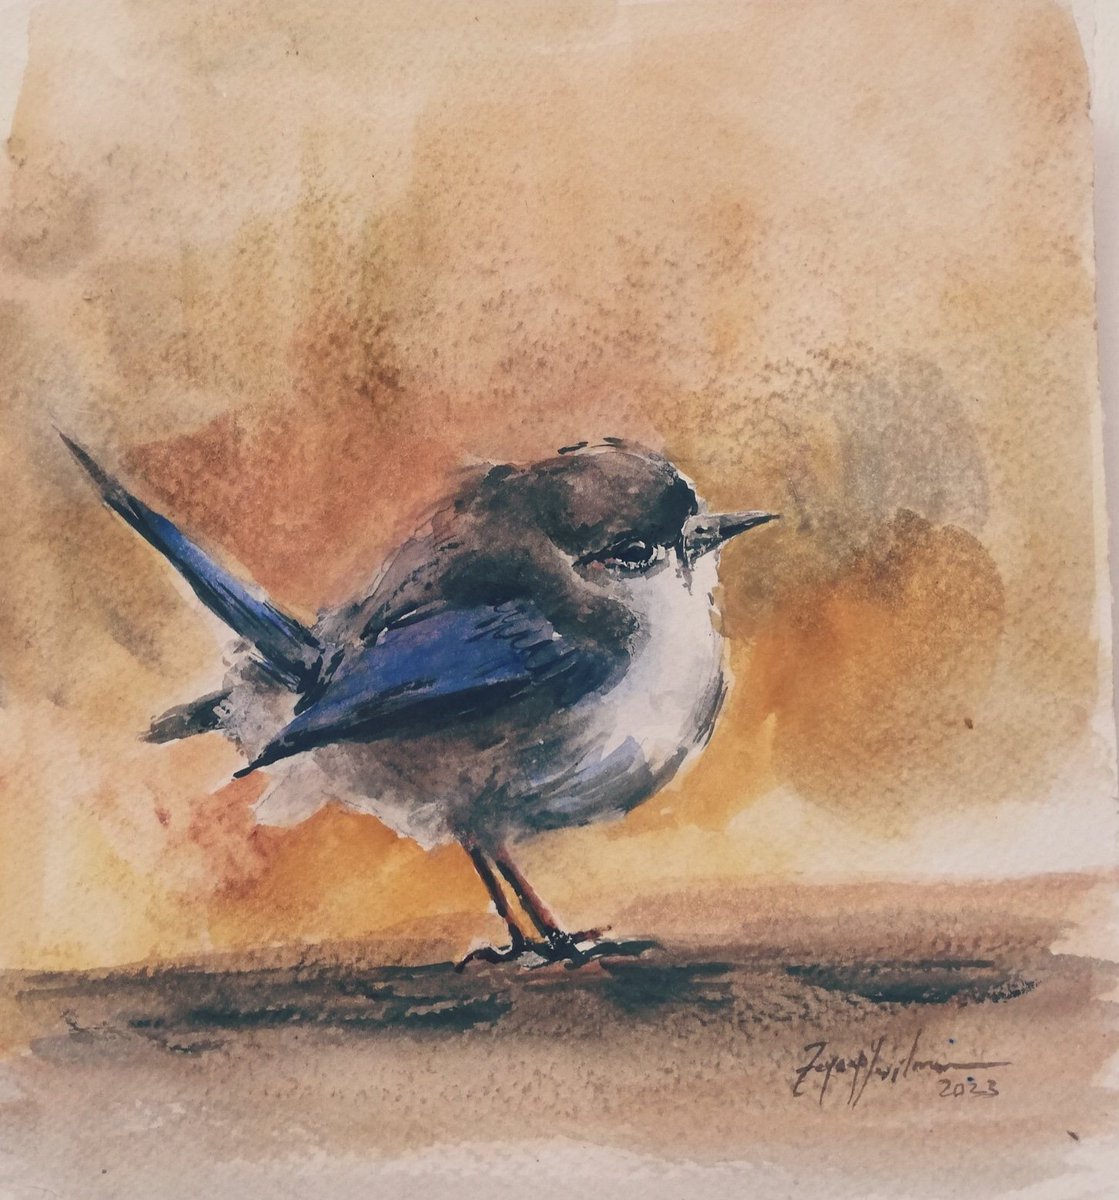 Kuşta hüzünlenir..

Suluboya kuş ..
Watercolor